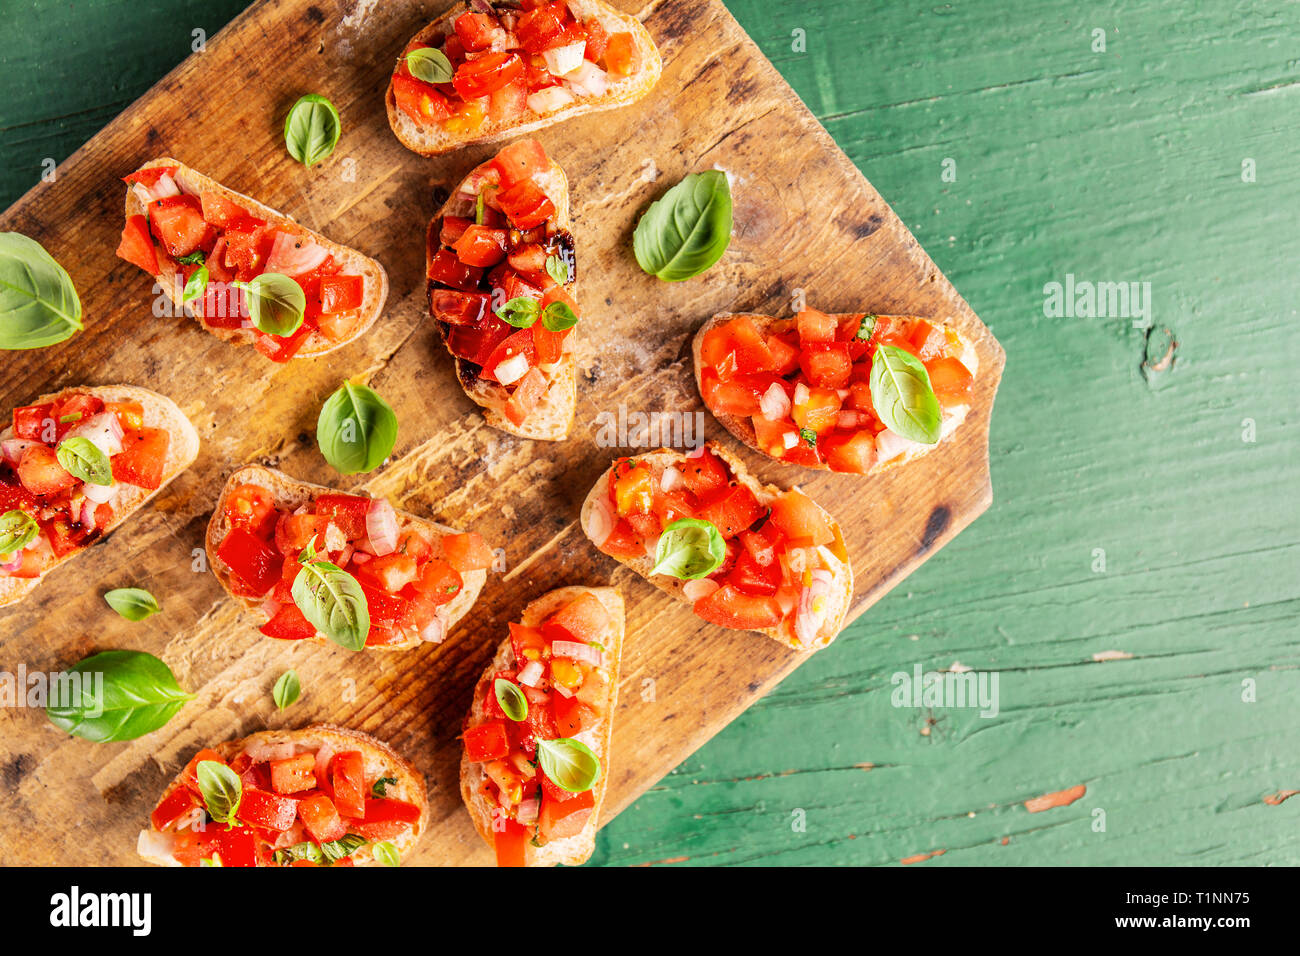 Bruschetta à la tomate, oignon, huile d'olive et le basilic sur planche de bois. Libre. Banque D'Images